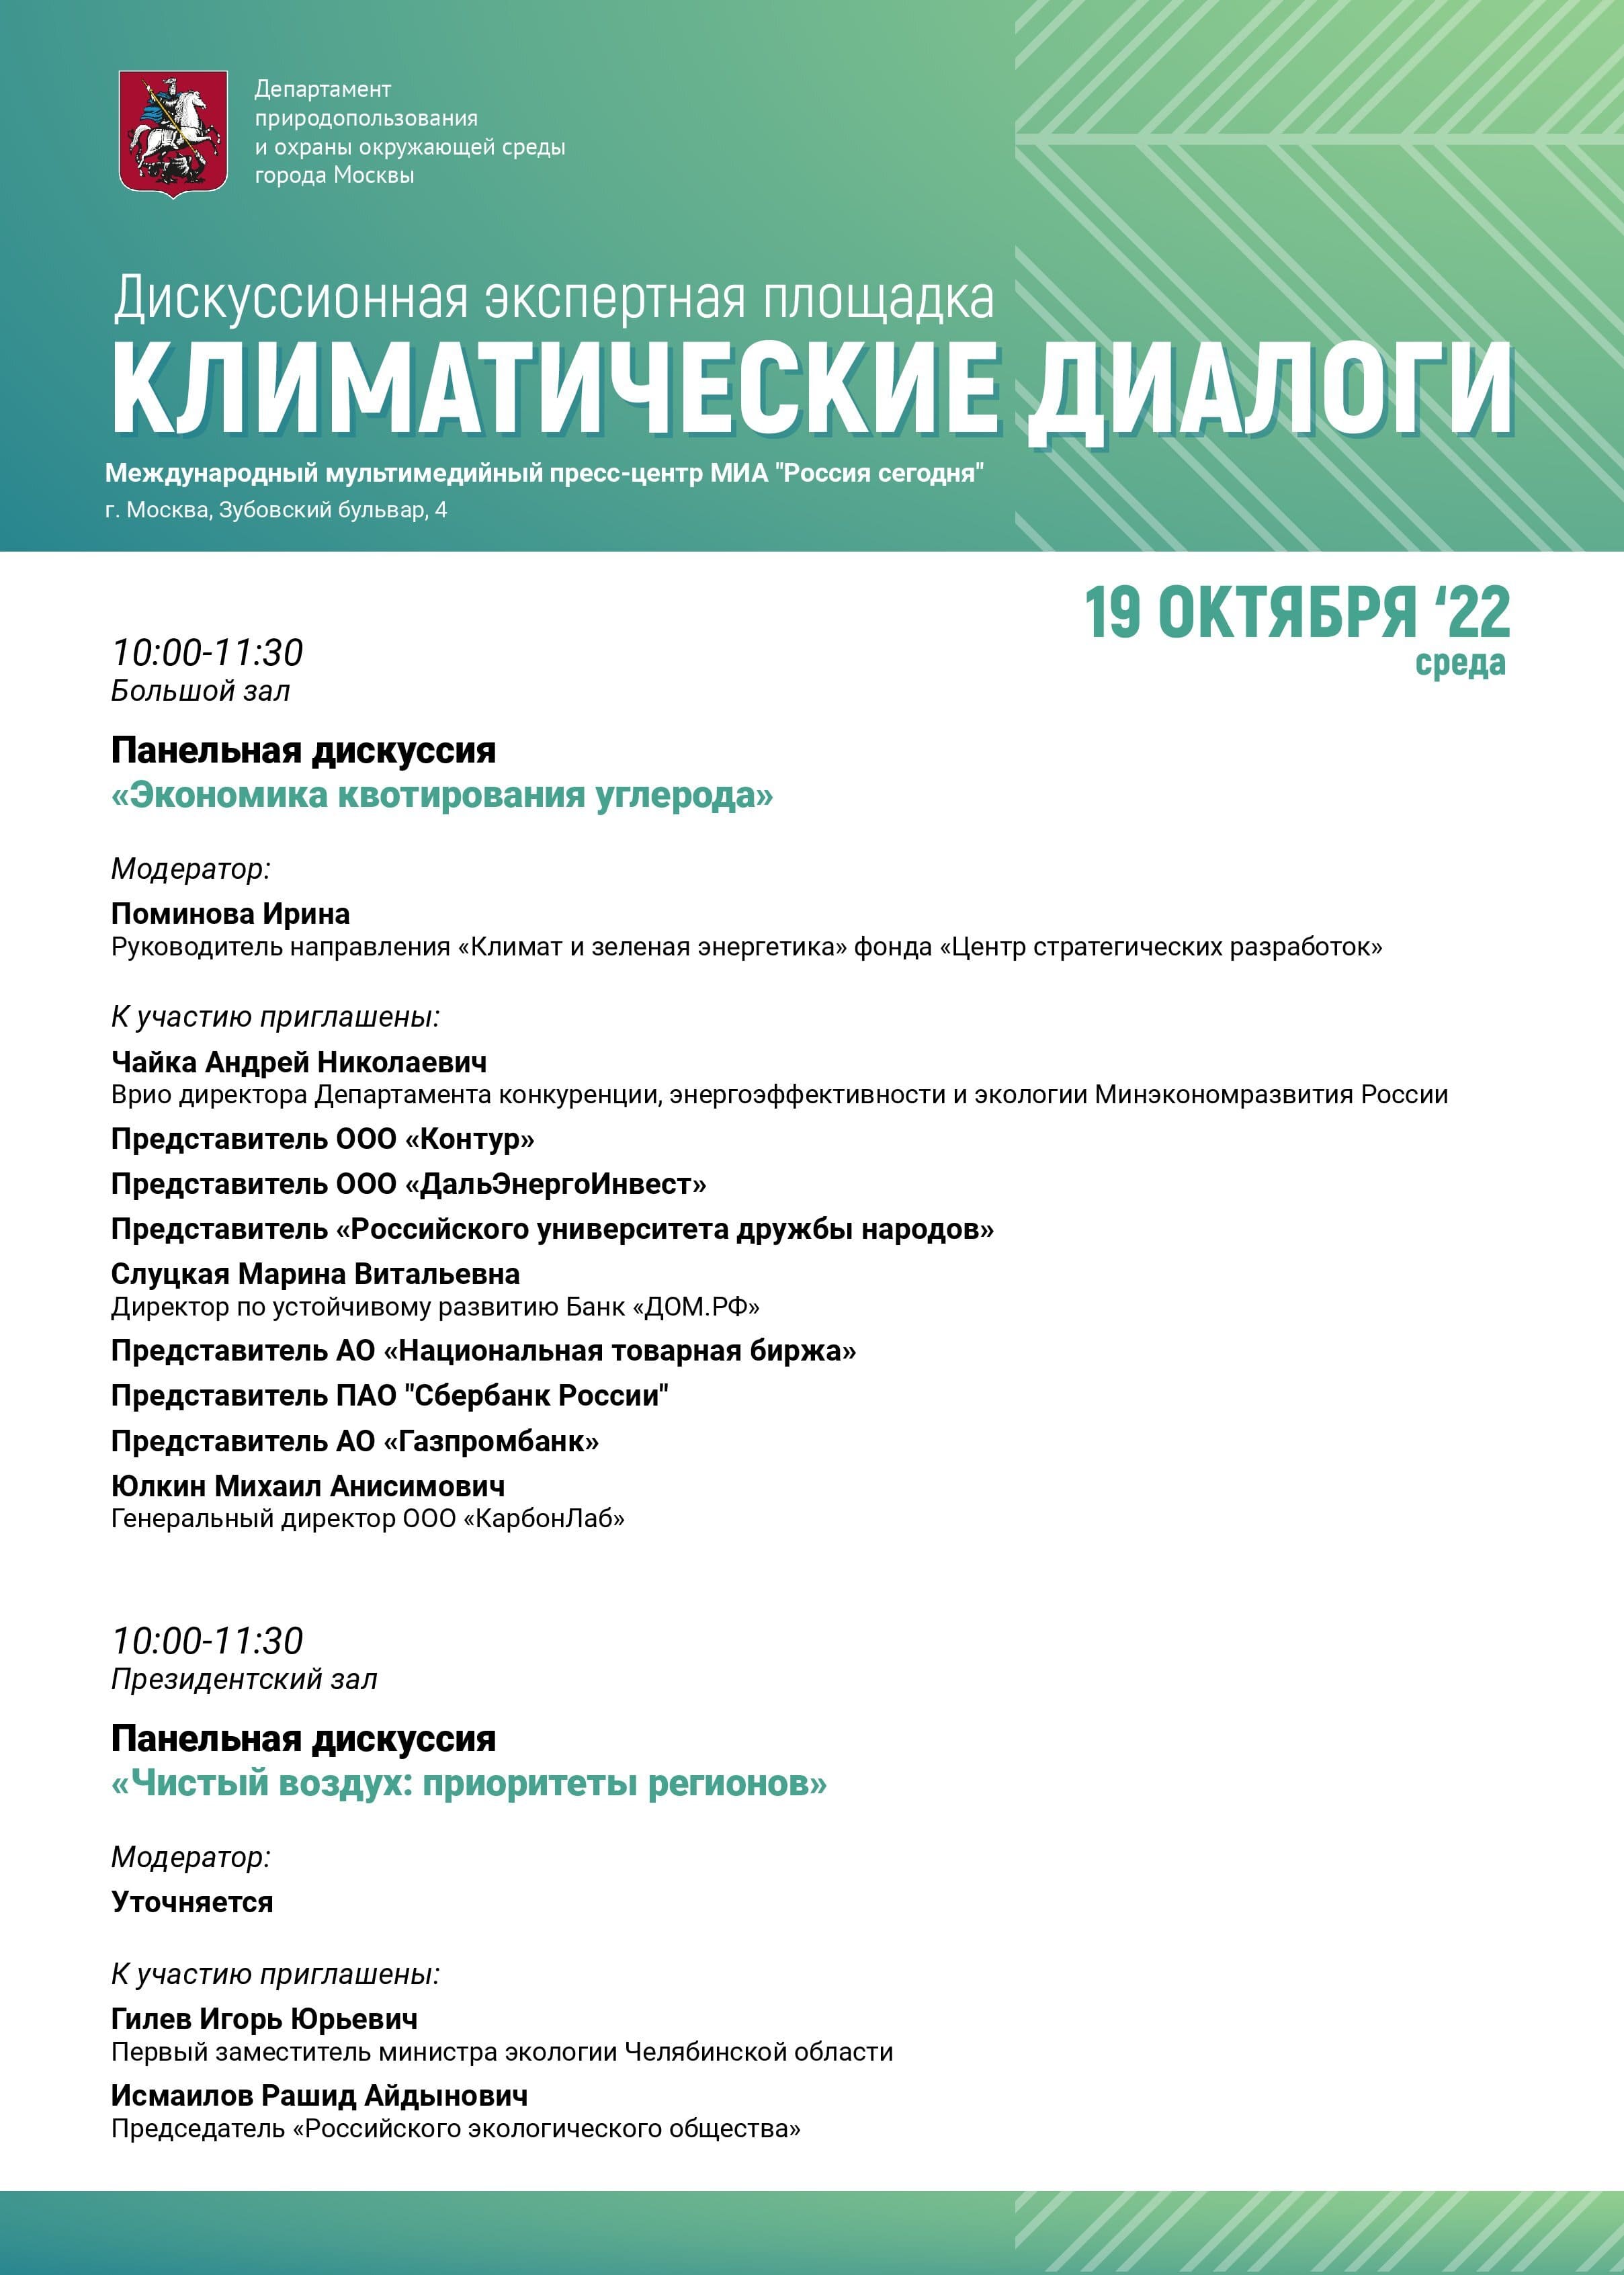 В Москве 18 и 19 октября пройдут «Климатические диалоги» - фото 6